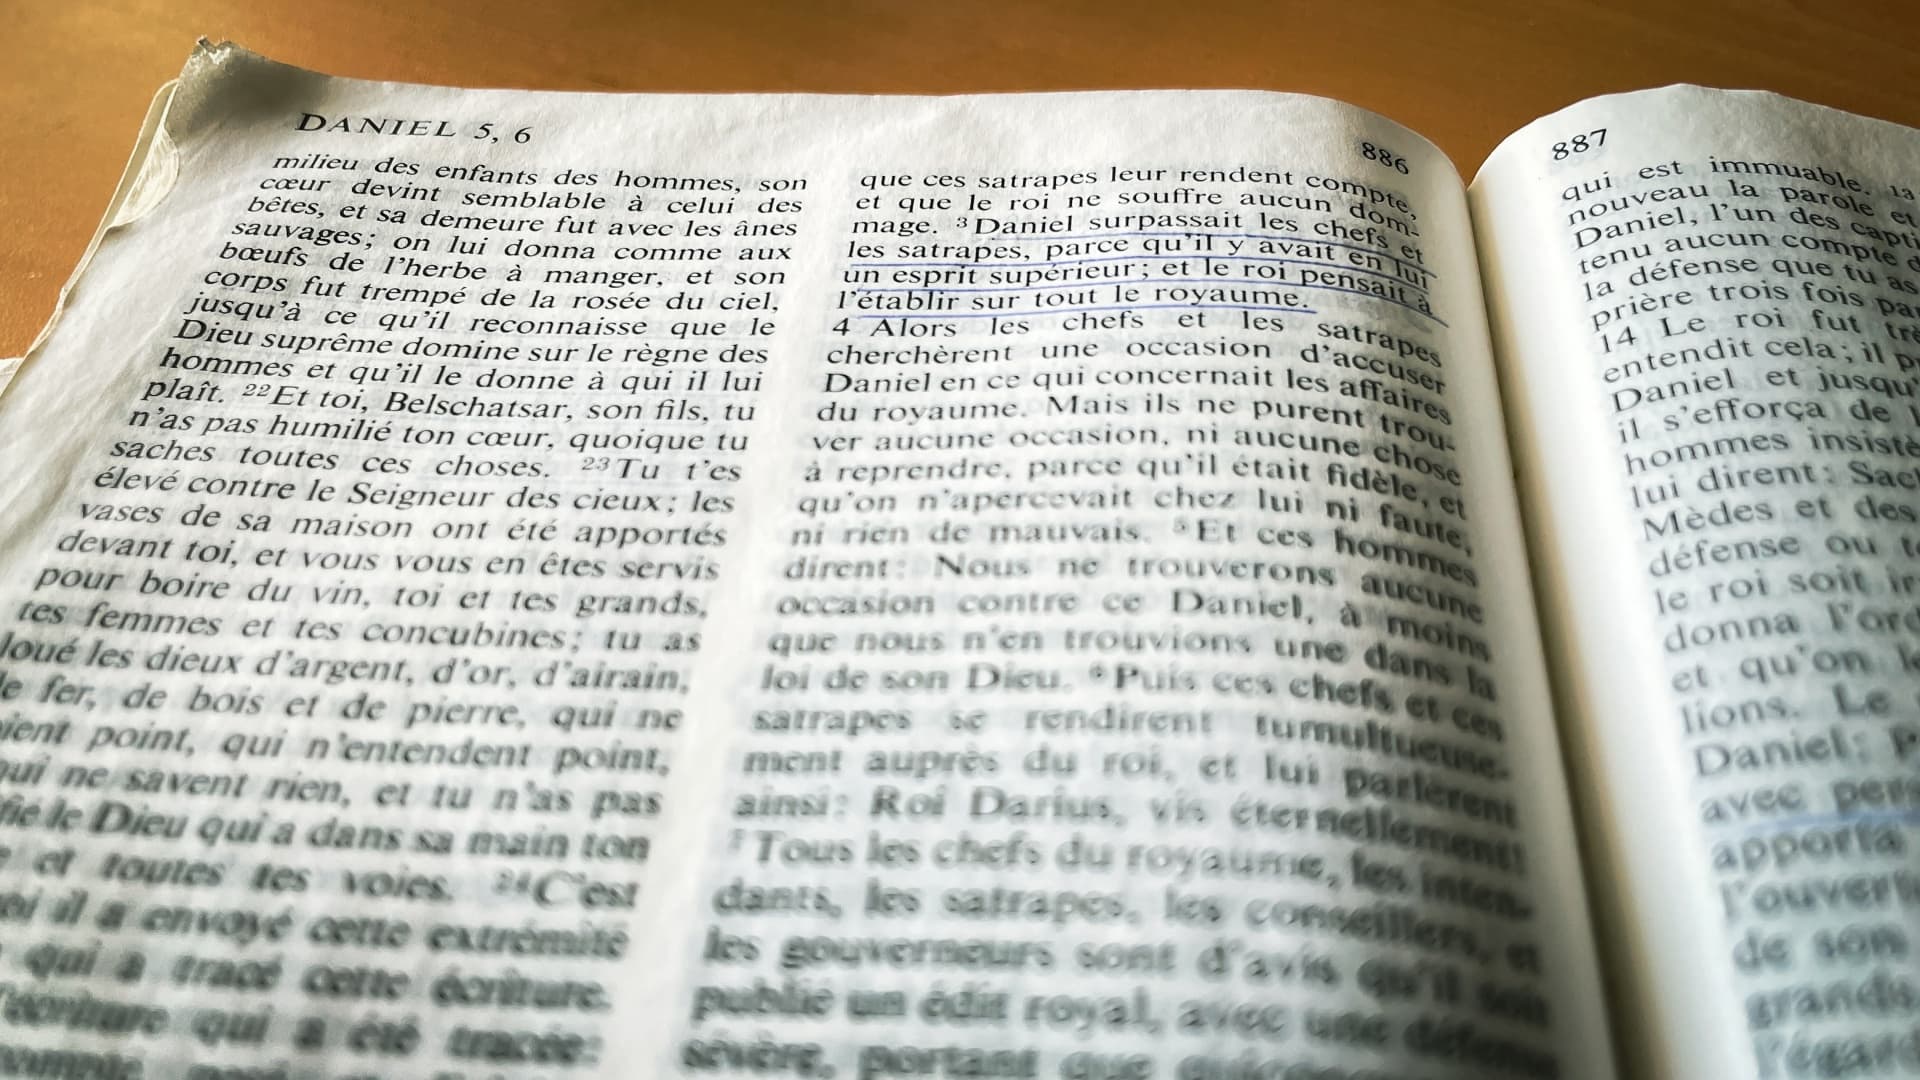 Livre Ouvert De Bible Dans La Langue Française Sur Le Support